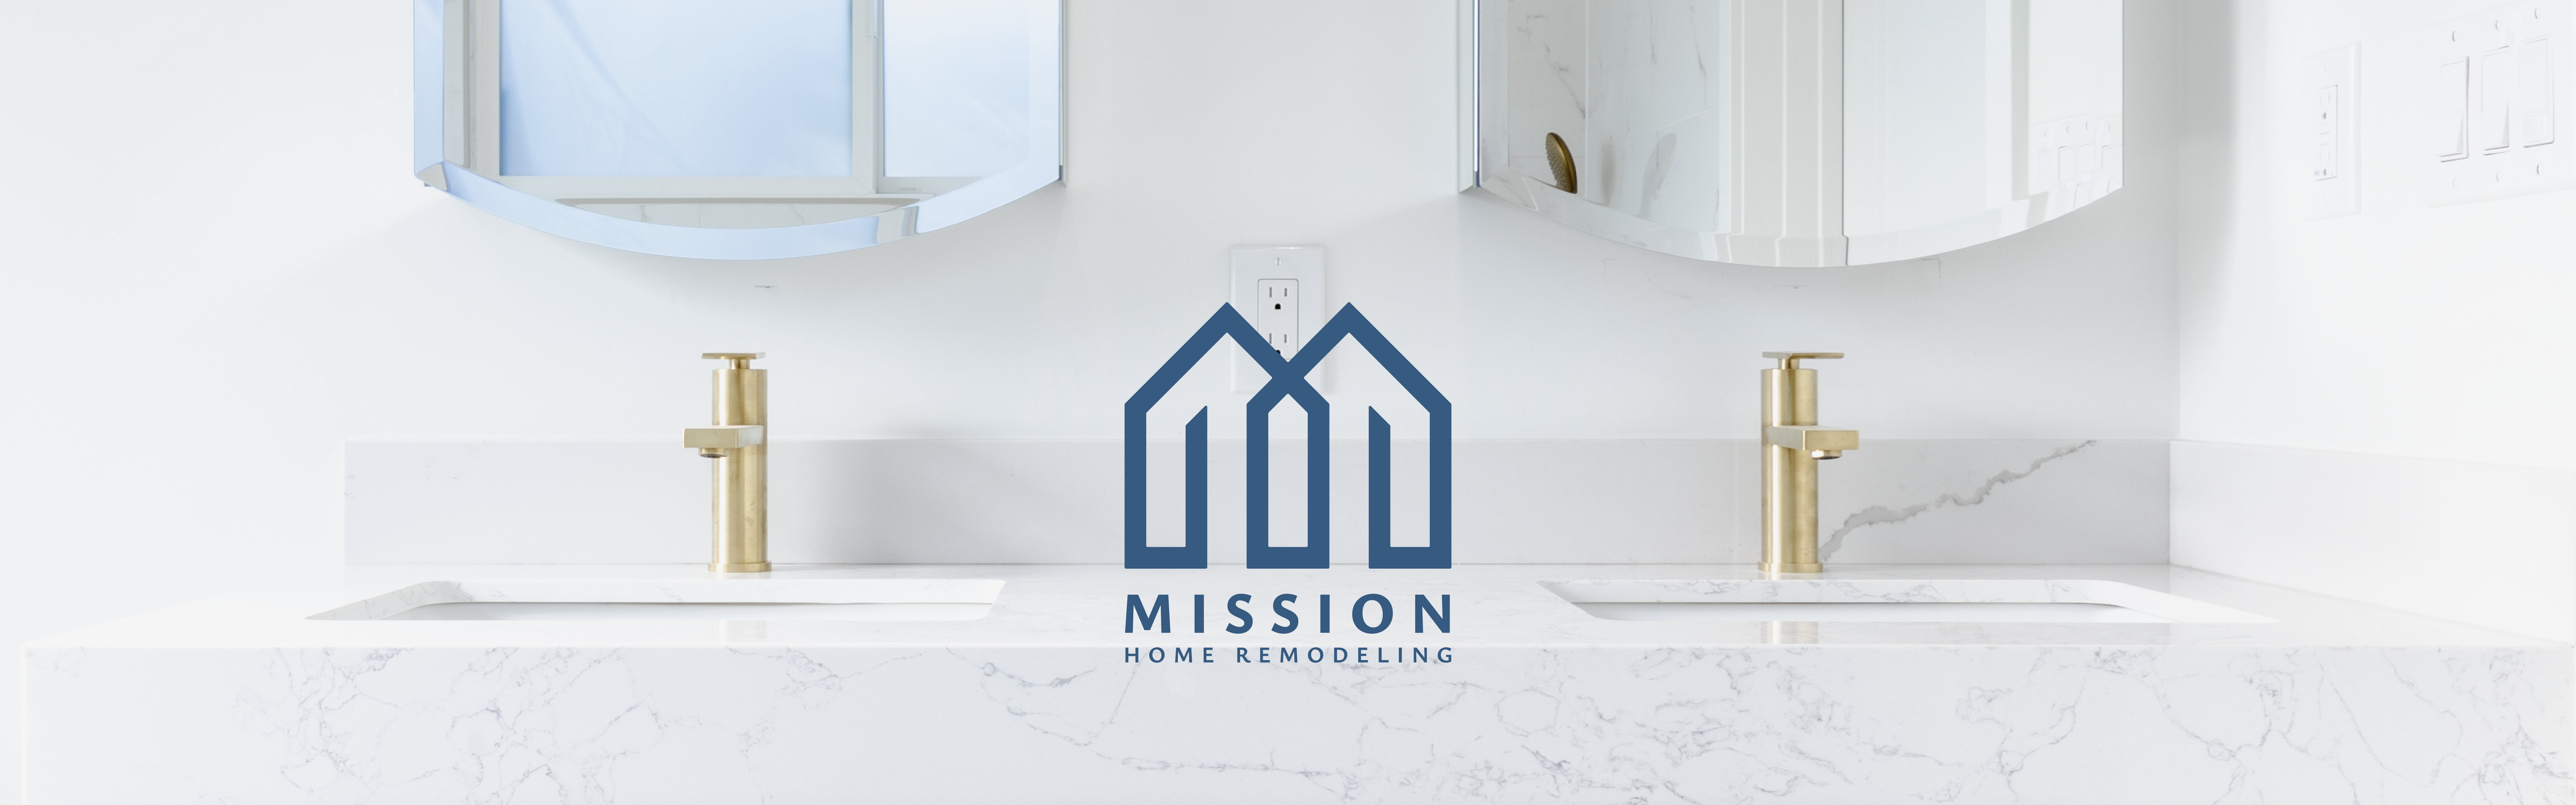 Mission Home Remodeling logo design